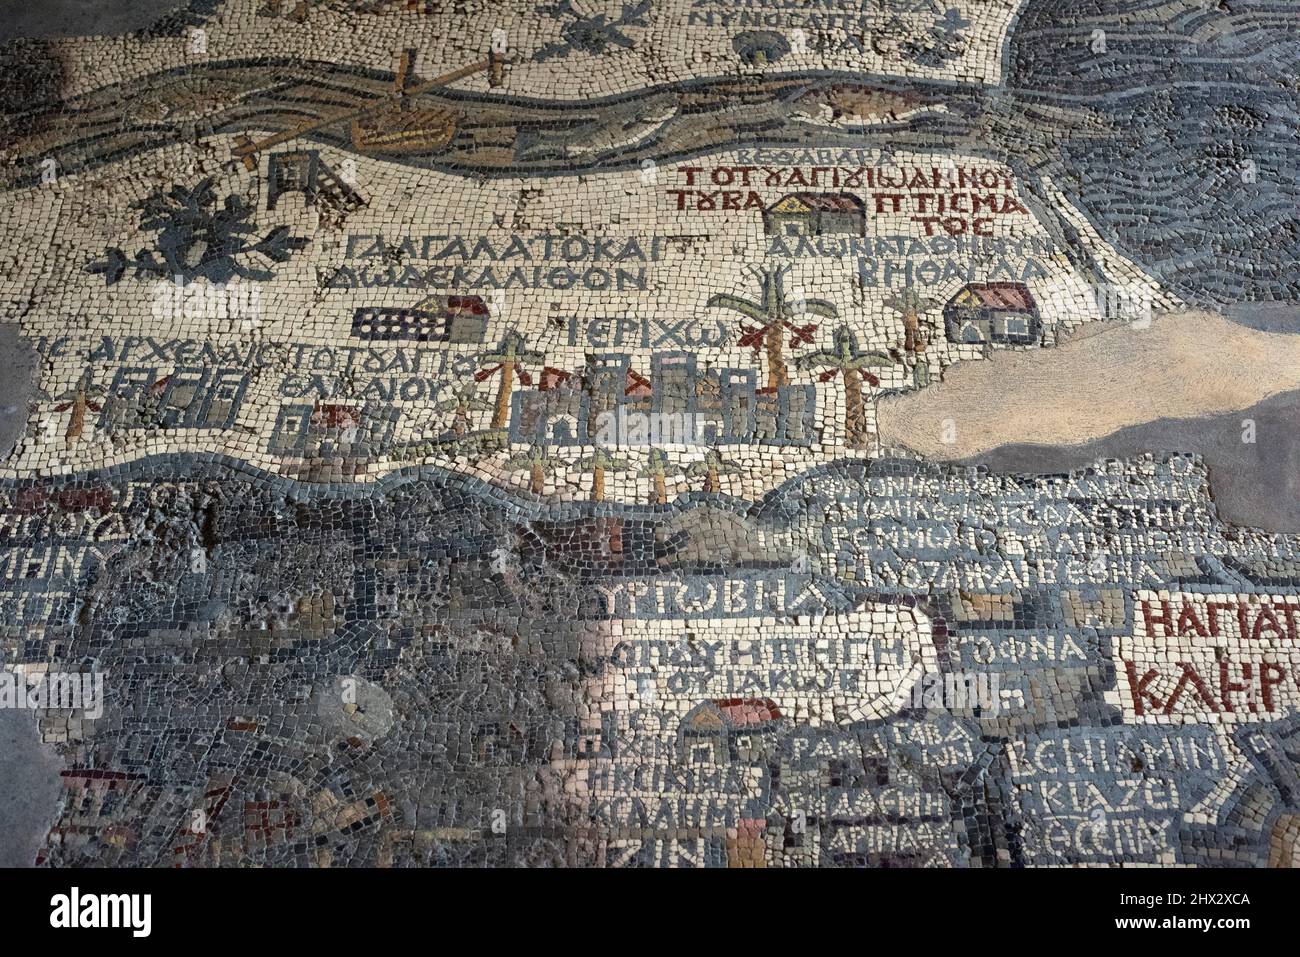 Mapa Mosaico de Madaba en la iglesia de San Jorge. Mapa de Tierra Santa (siglo 6th). Jordania. Foto de stock